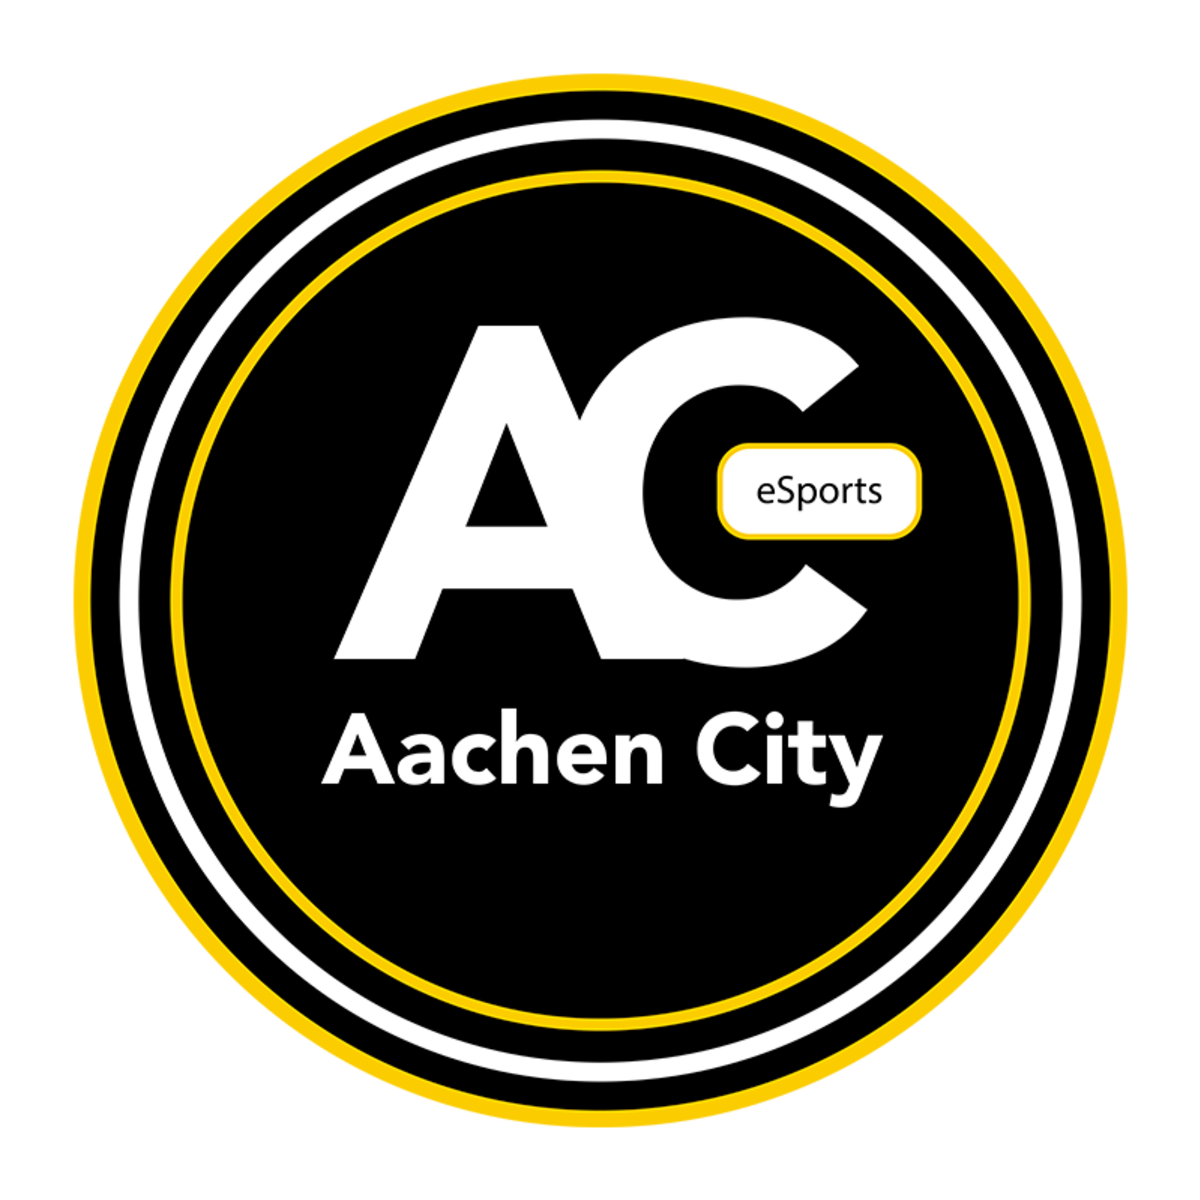 Aachen City Esports Dota2starladdercom